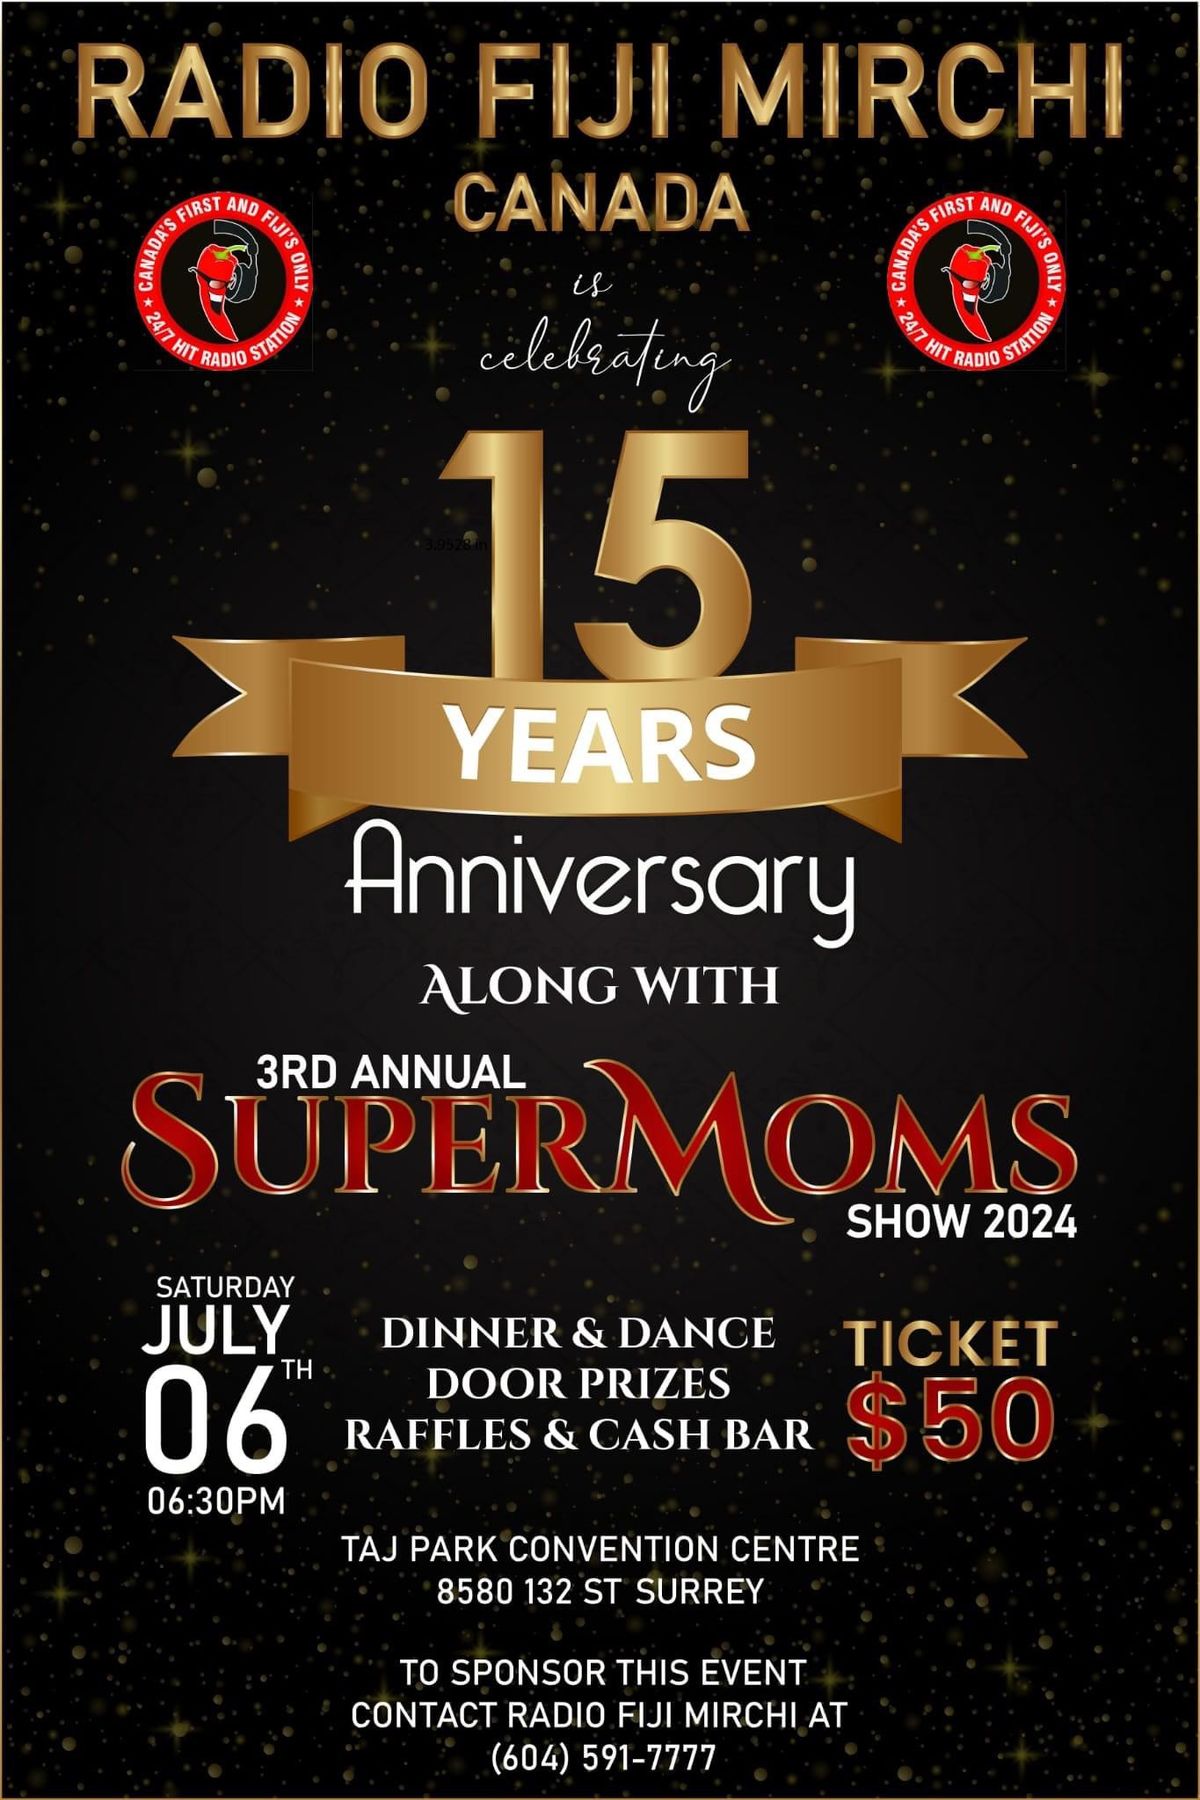 Radio Fiji Mirchi Canada 15th Anniversary & 3rd Annual Super Mom Show!